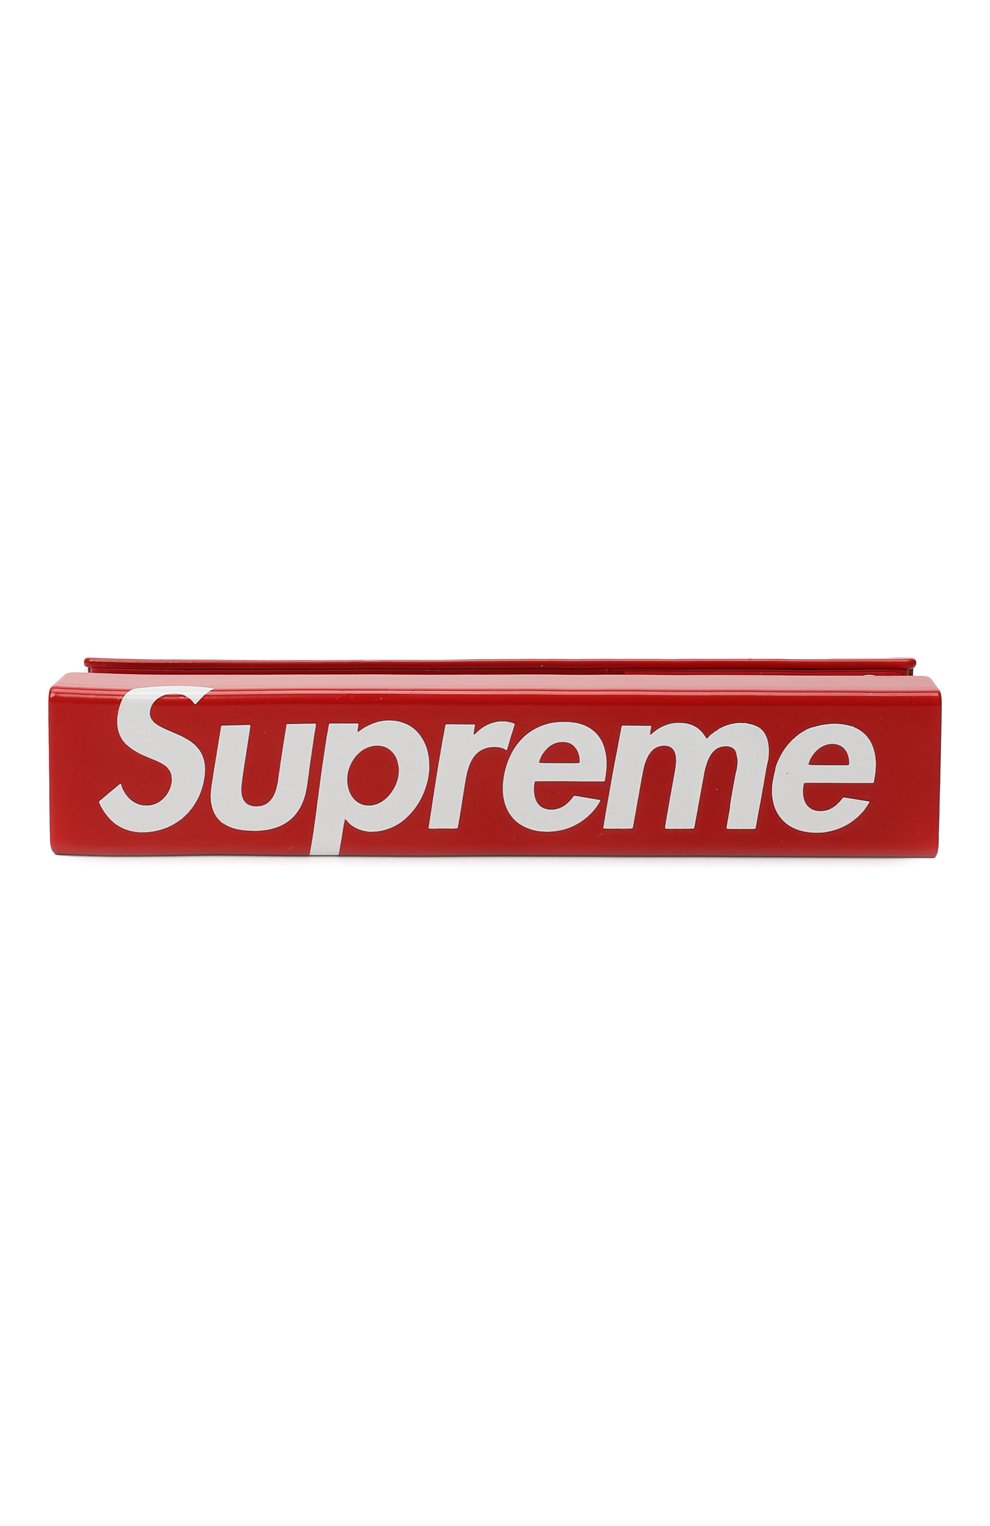 Степлер | Supreme | Красный - 1